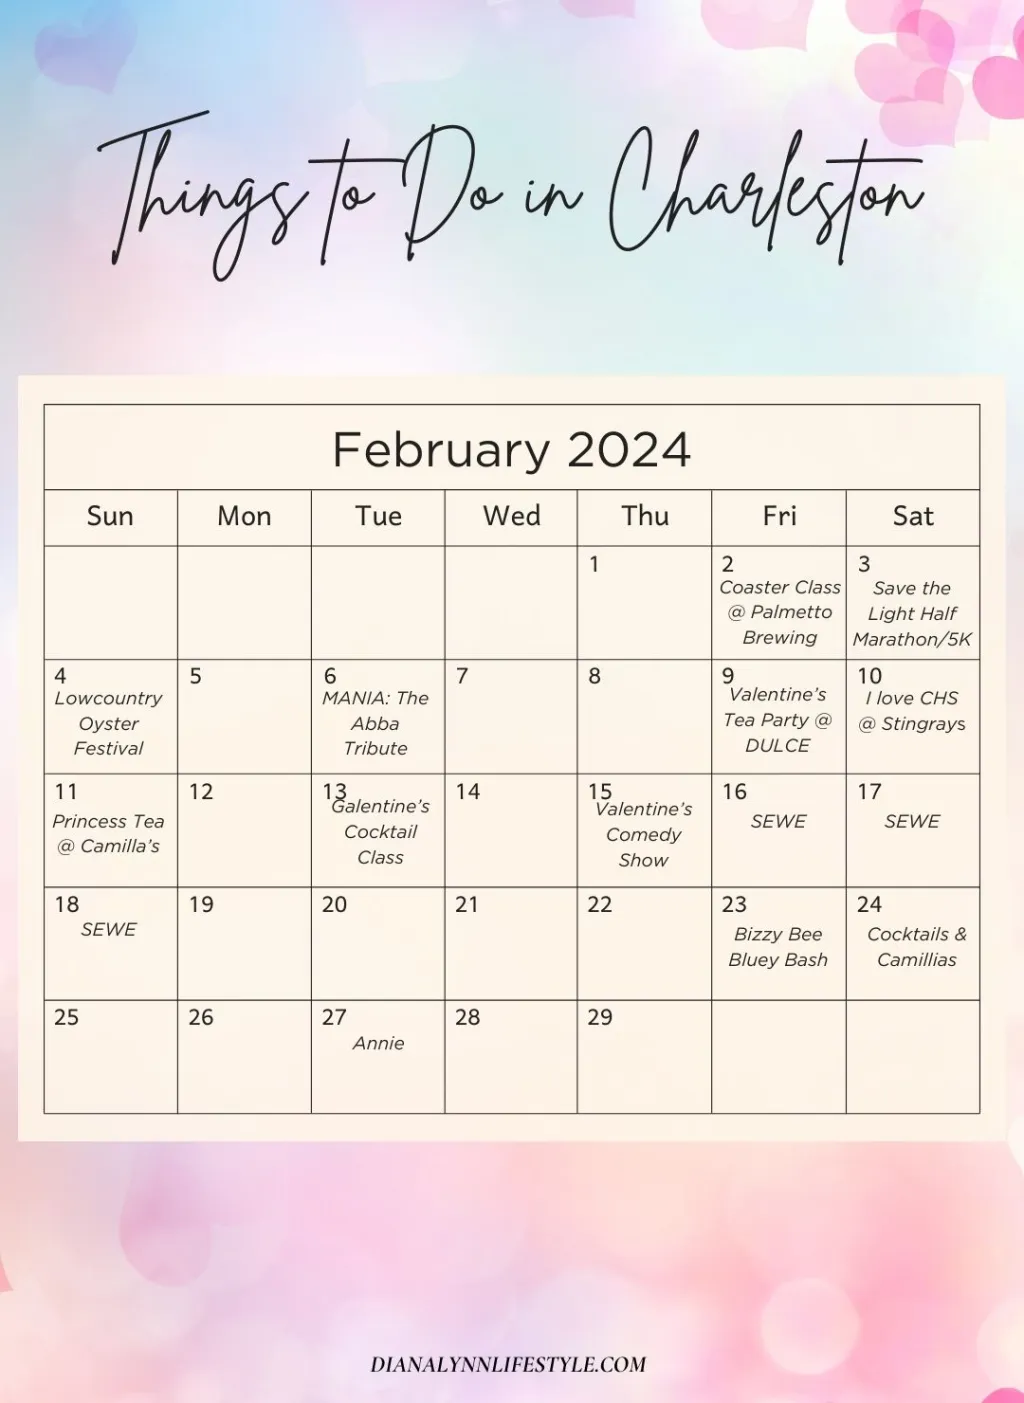 charleston activities in february